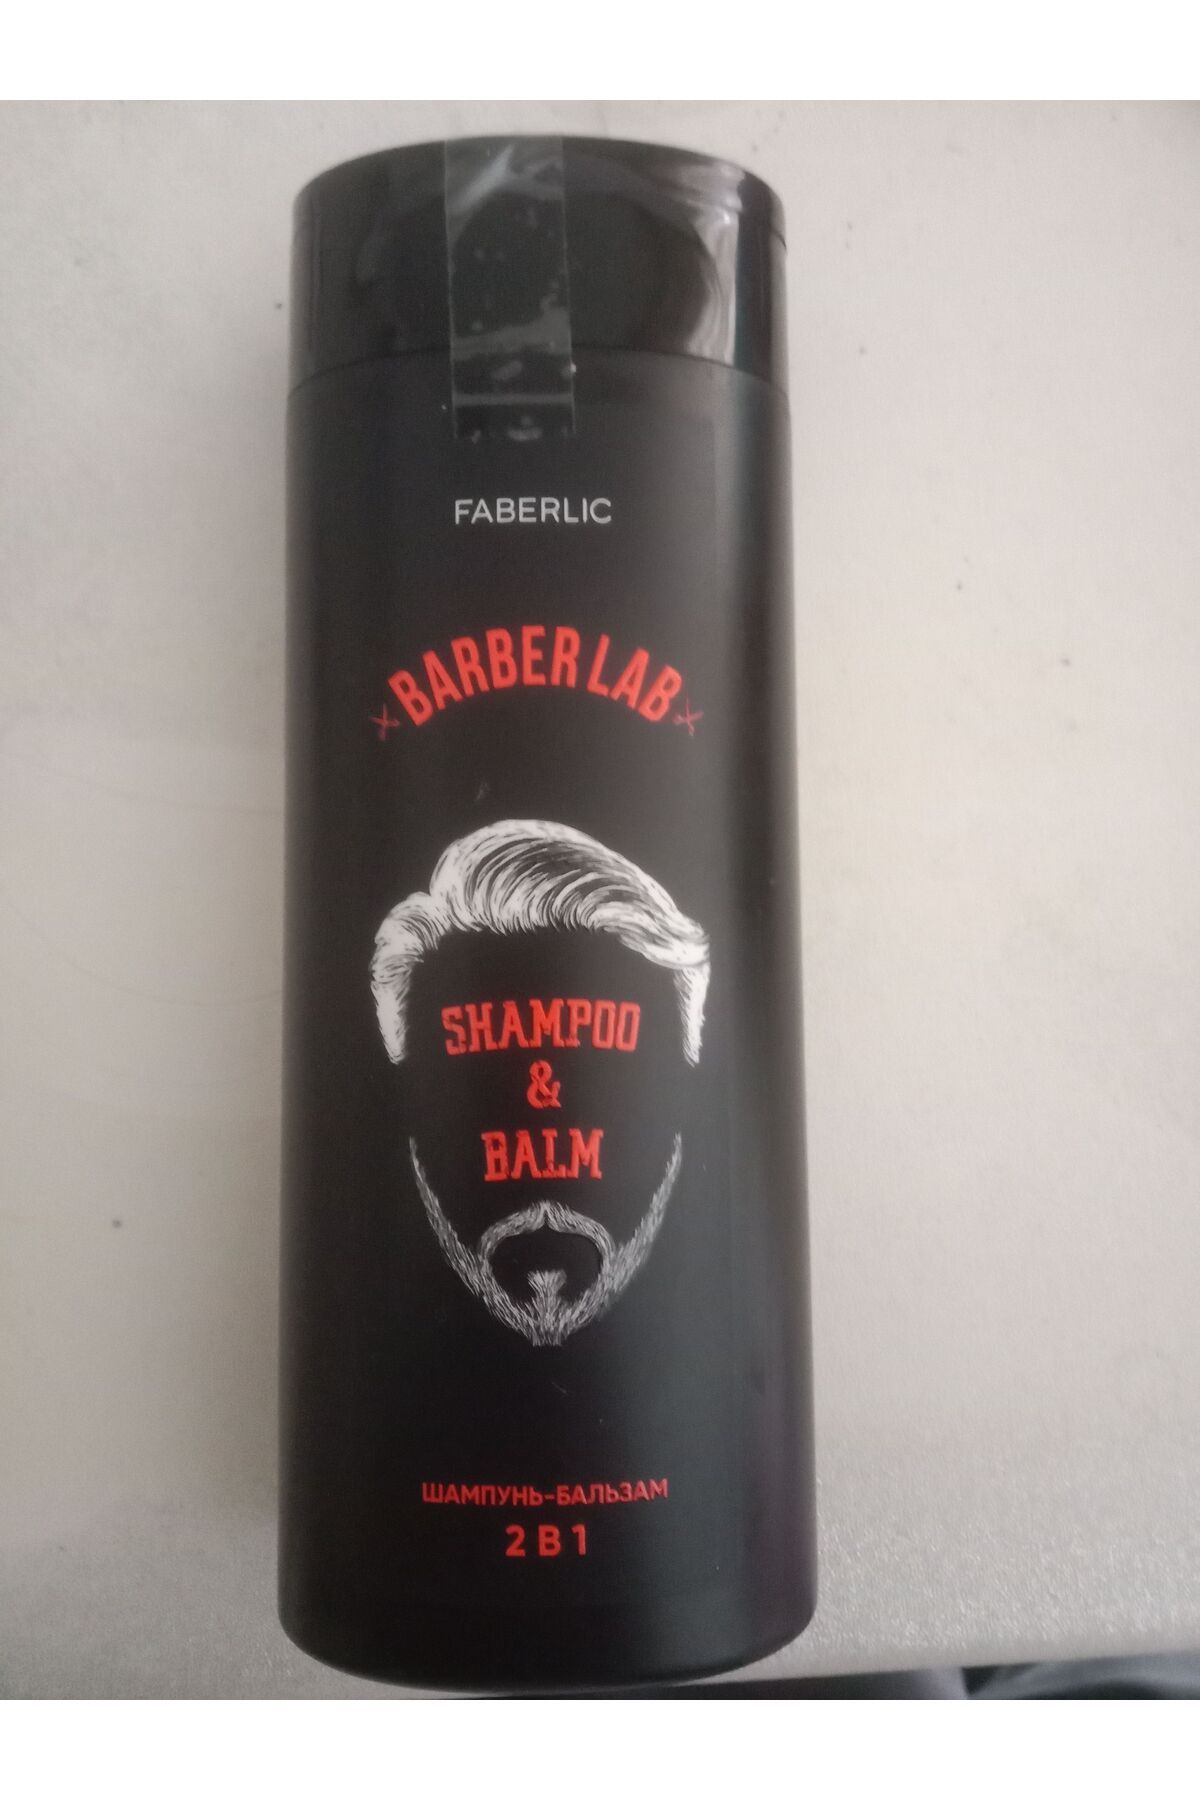 Faberlic BARBER LAB Serisi 2'si 1 Arada Şampuan ve Saç Kremi

Ürün Kodu: 2642